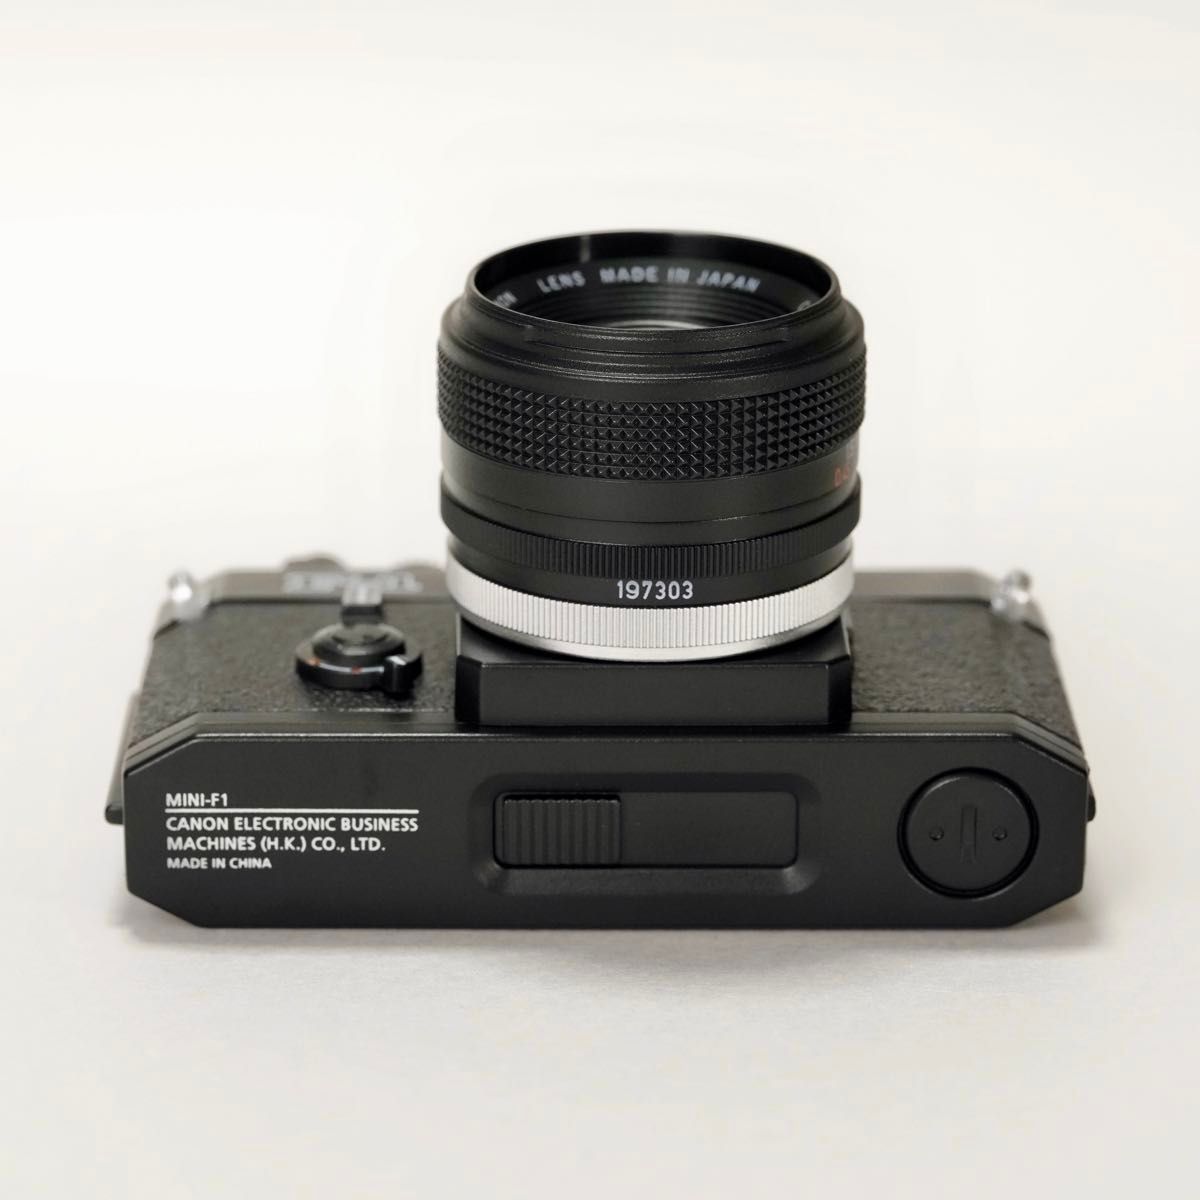 【新品未使用】ミニチュアカメラ USBメモリー F-1 16GB Canon キヤノン